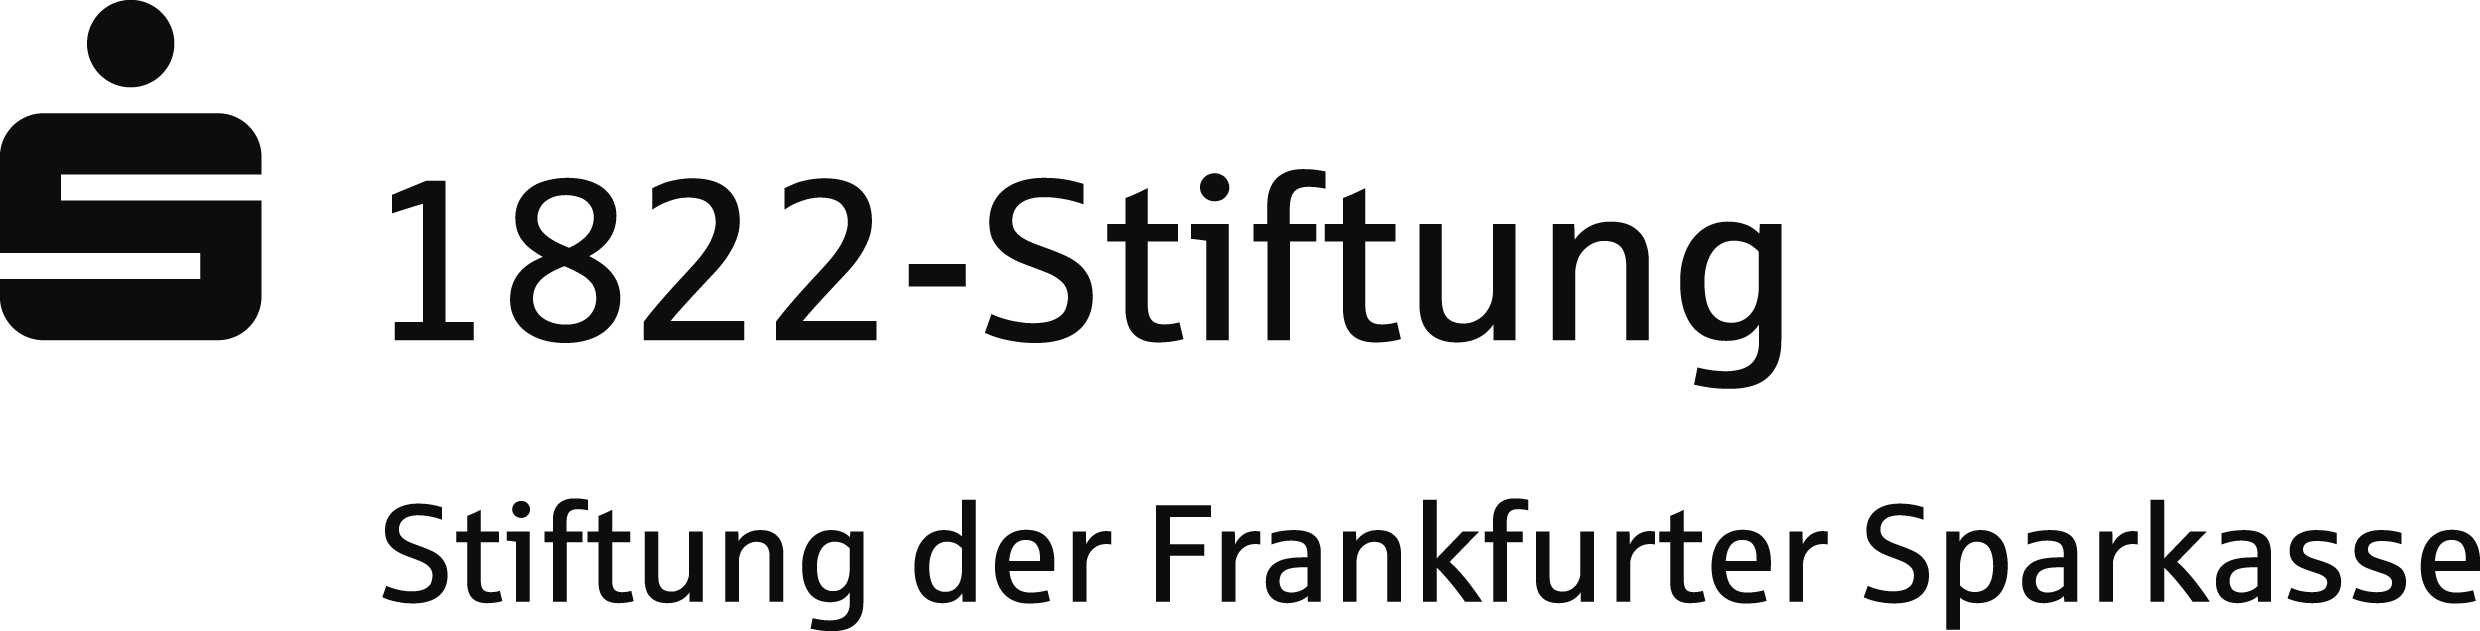 FS Stiftung schwarz